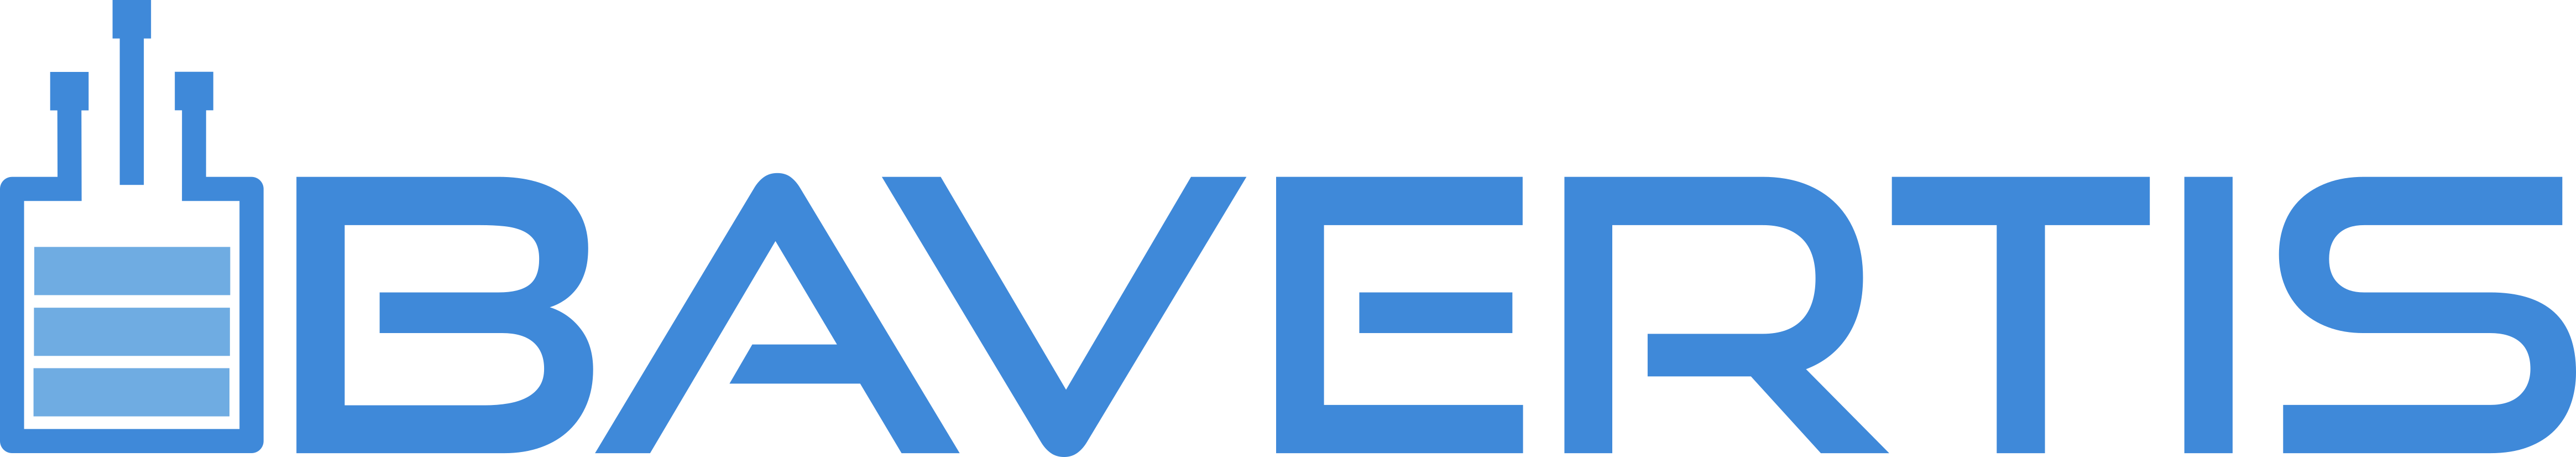 bavertis-logo-colored-full.png